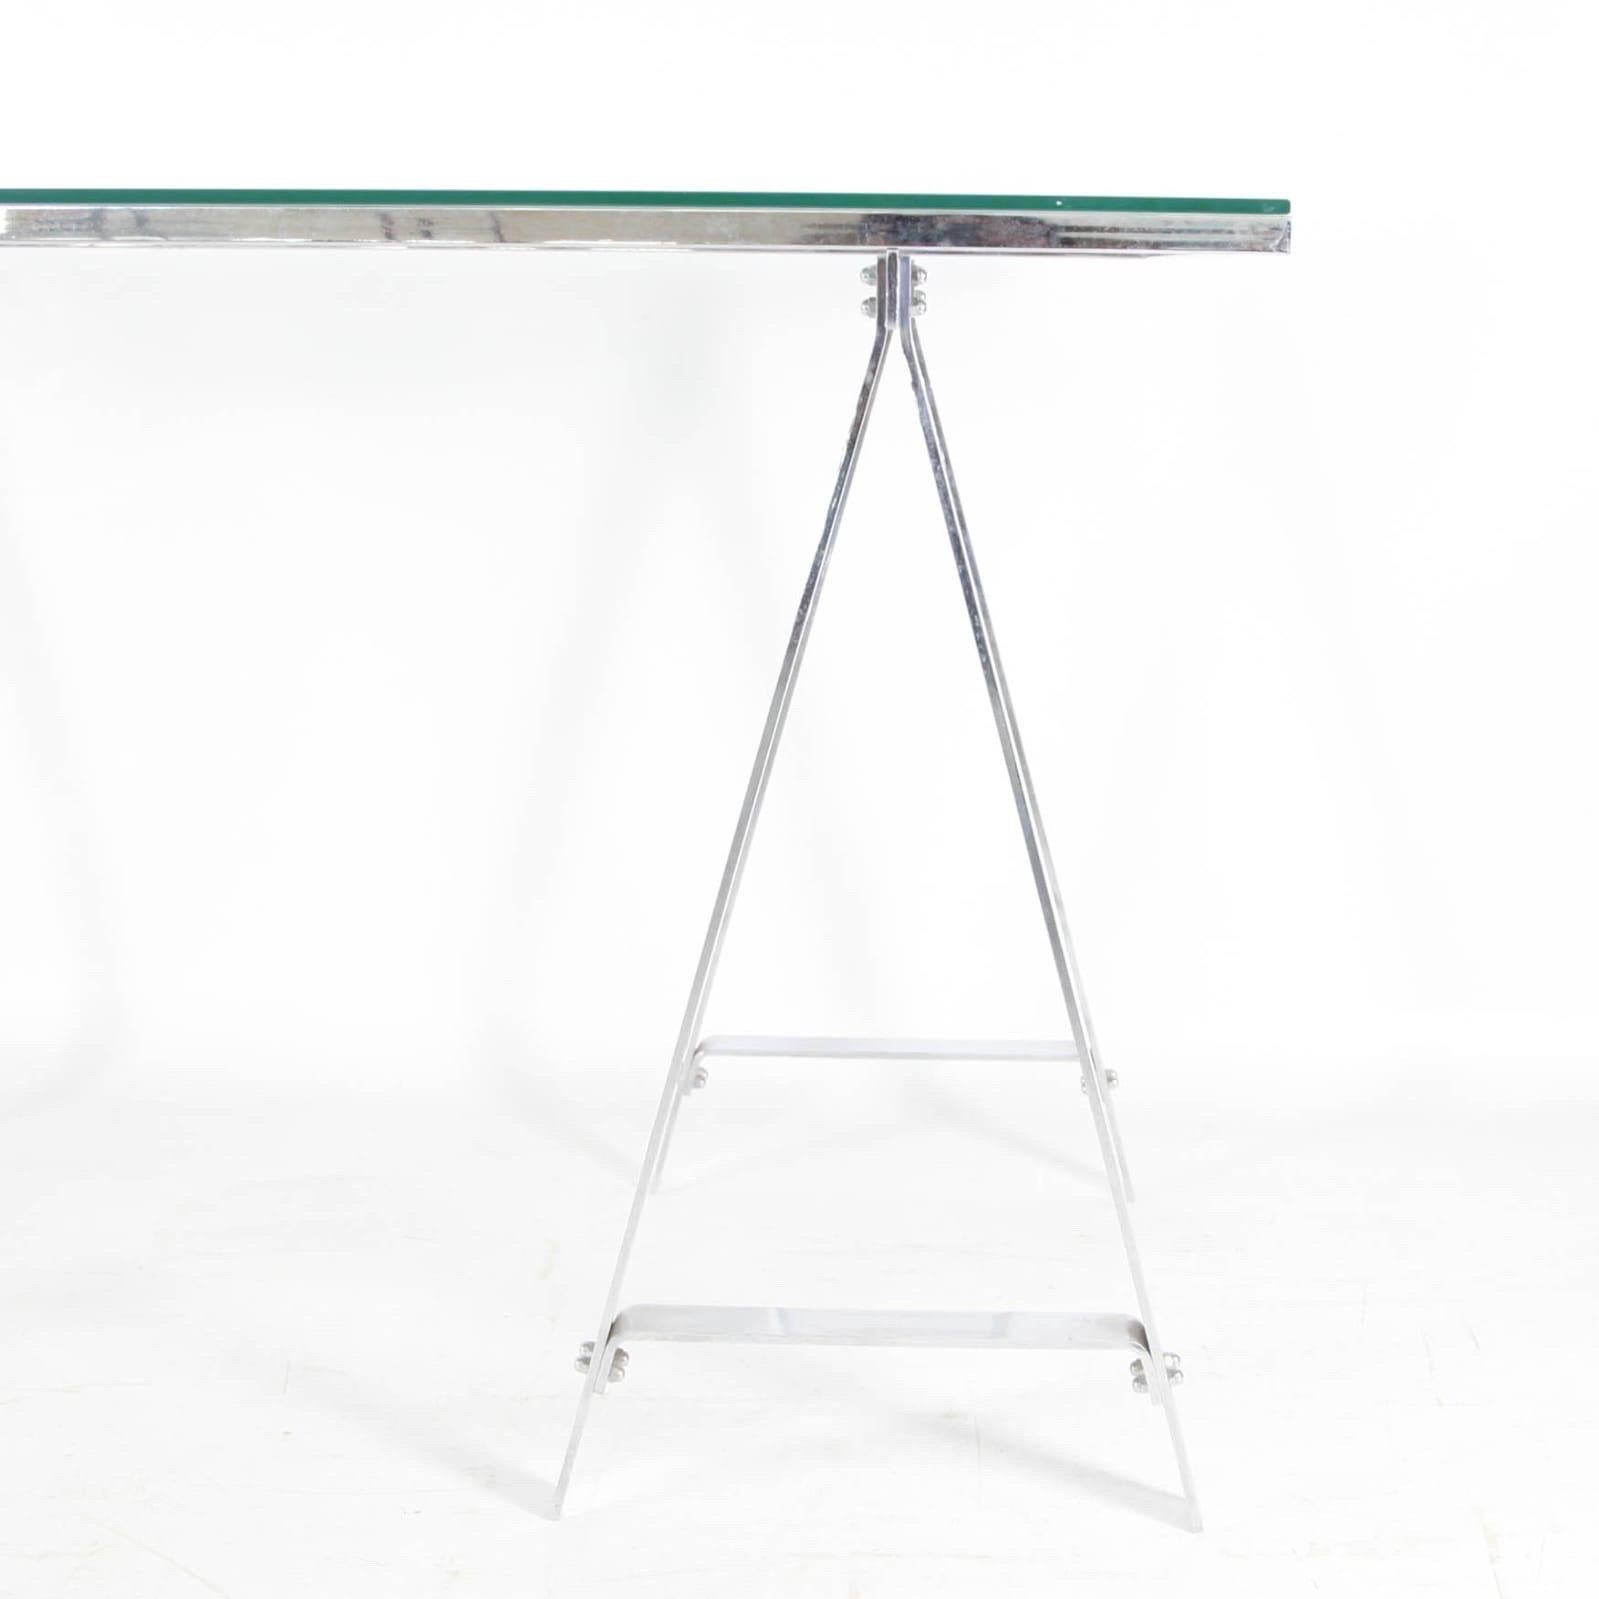 Seltener Schreibtisch aus Edelstahl, um 1970. Eine dicke Glasplatte liegt auf einem Edelstahlrahmen, der sich an die 2 Beine anpasst.
Sehr schlichtes Design, tolle Qualität und guter Zustand.